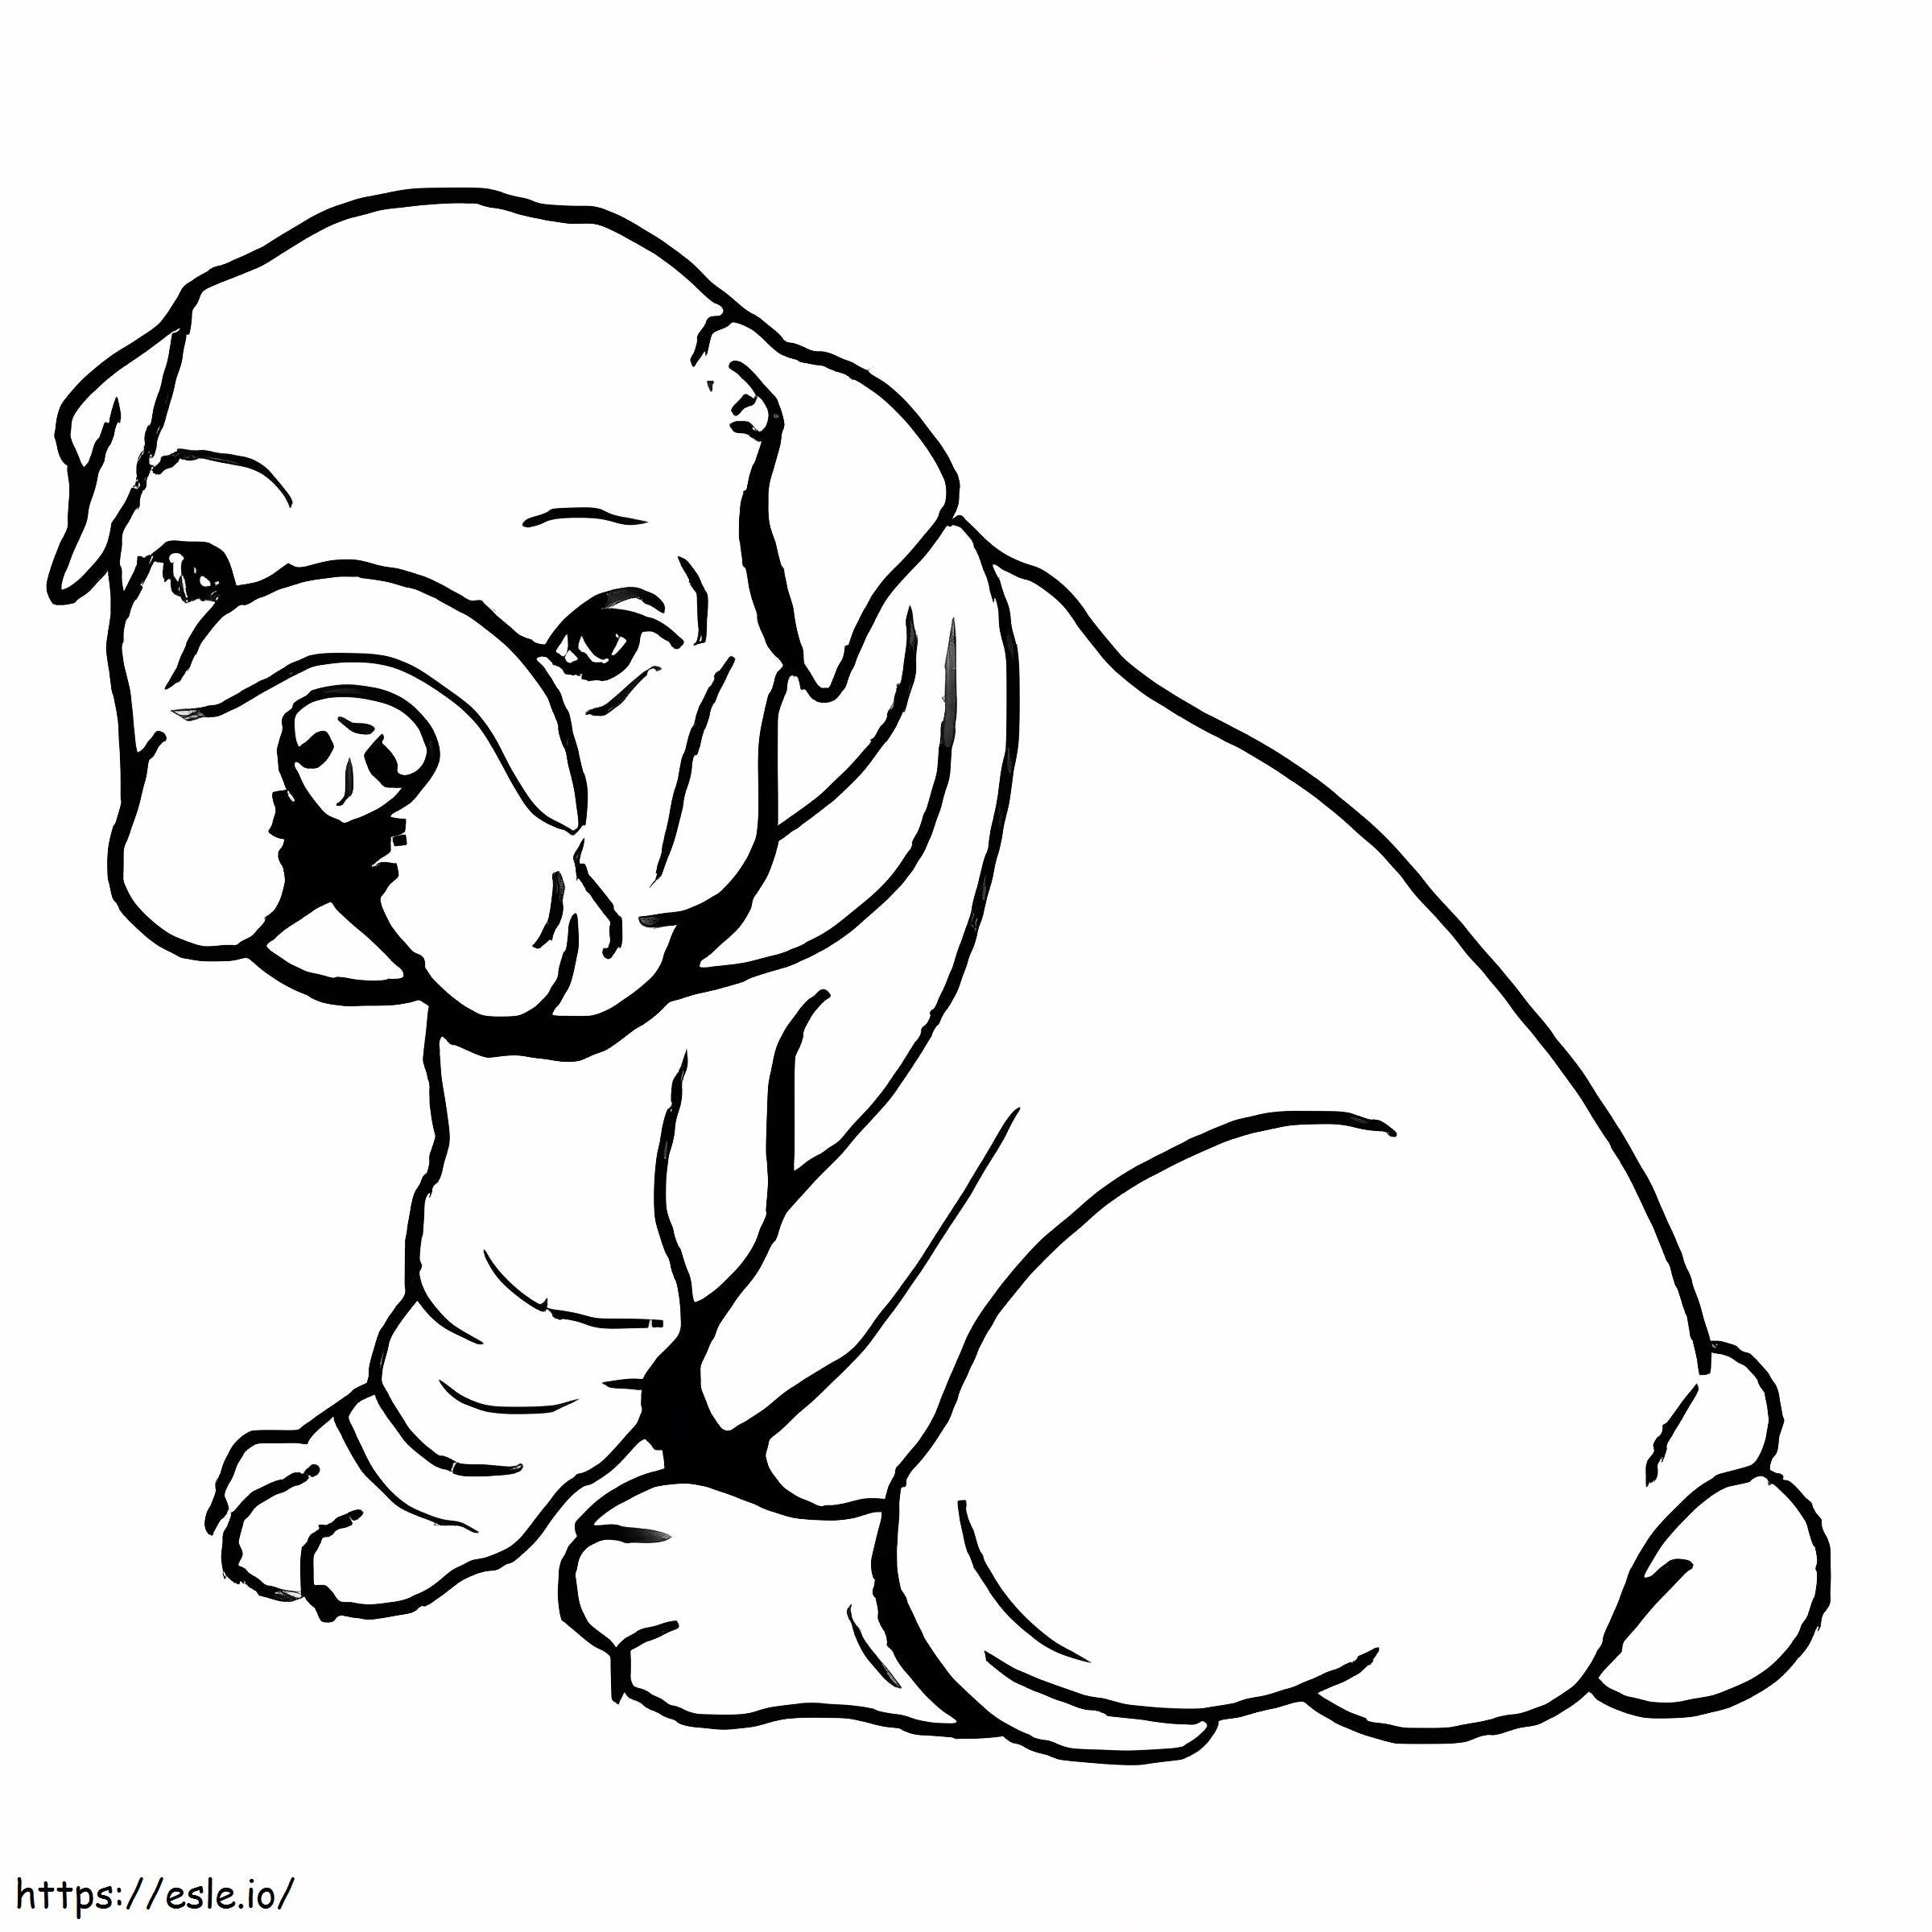 Baby Bulldog Sitting coloring page